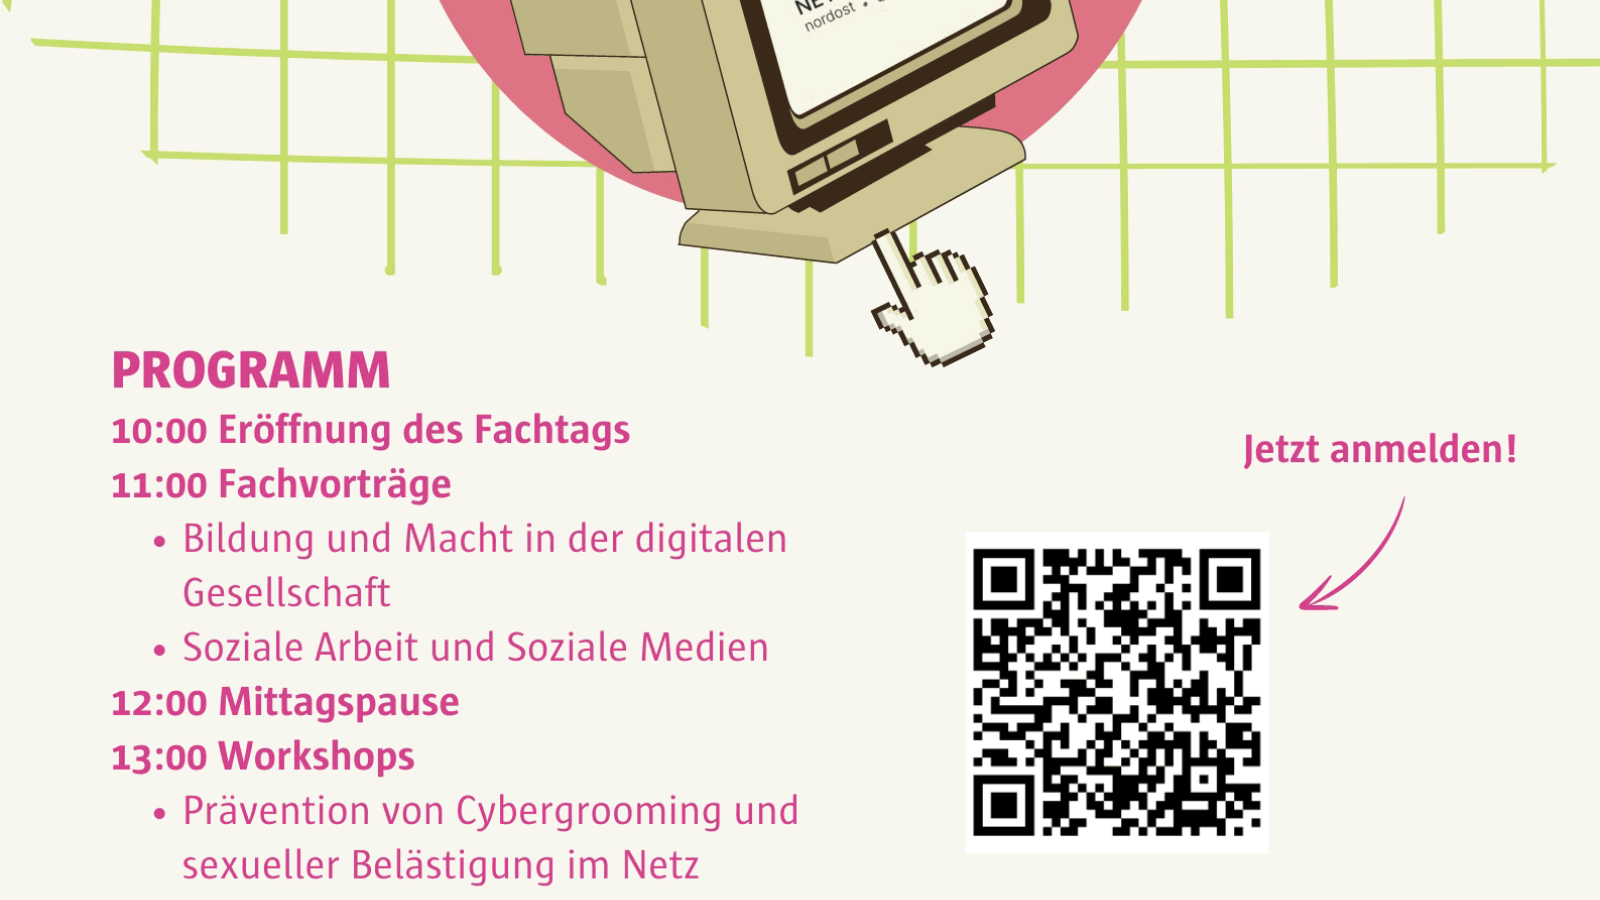 Ein Plakat mit dem Programm und der Einladung zum Fachtag "#GesellschaftBilden im Digitalzeitalter"